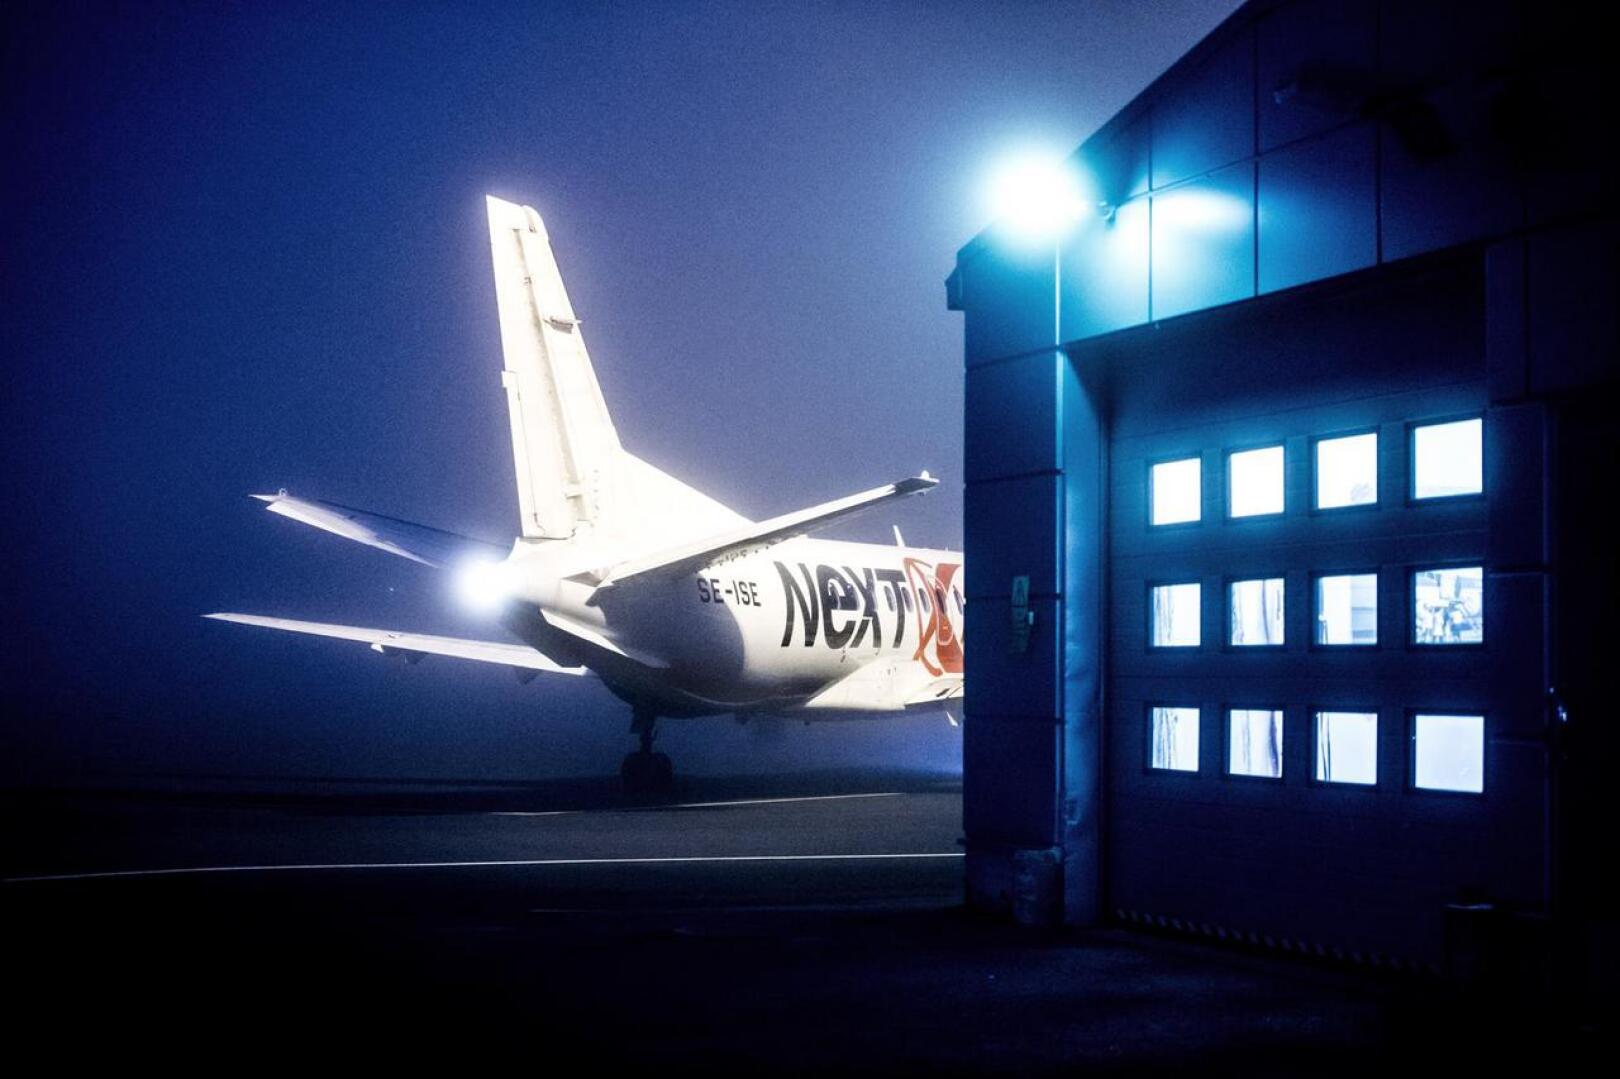 Nextjetin lennot loppuivat myös Kokkola-Pietarsaaren kentältä.